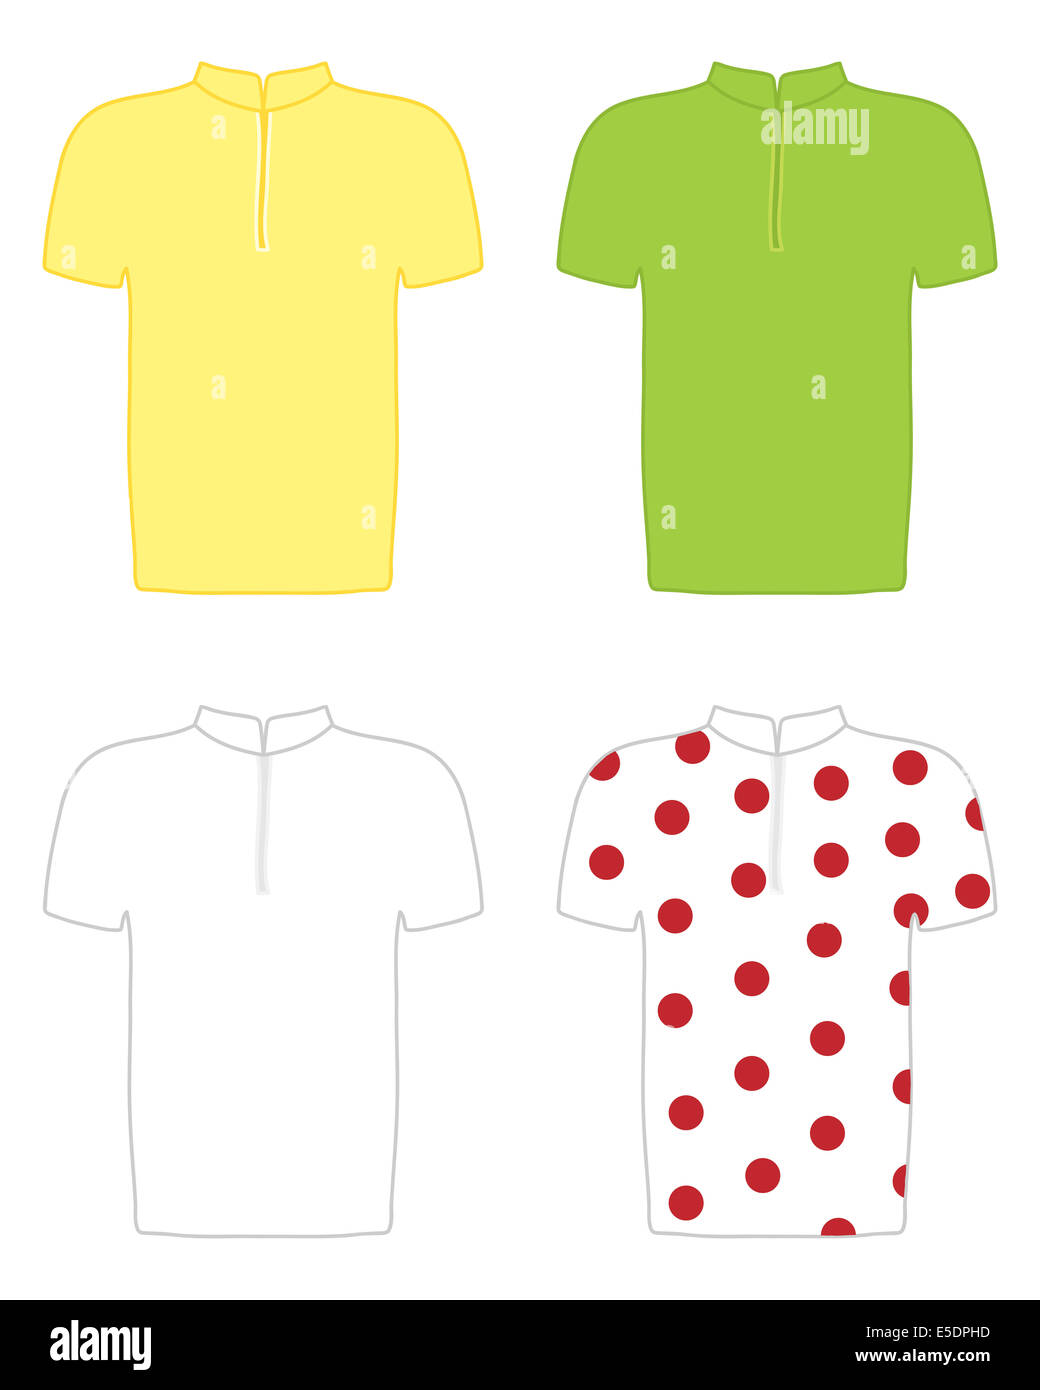 Una illustrazione del giallo verde e bianco polka dot maglie di competizioni ciclistiche Foto Stock